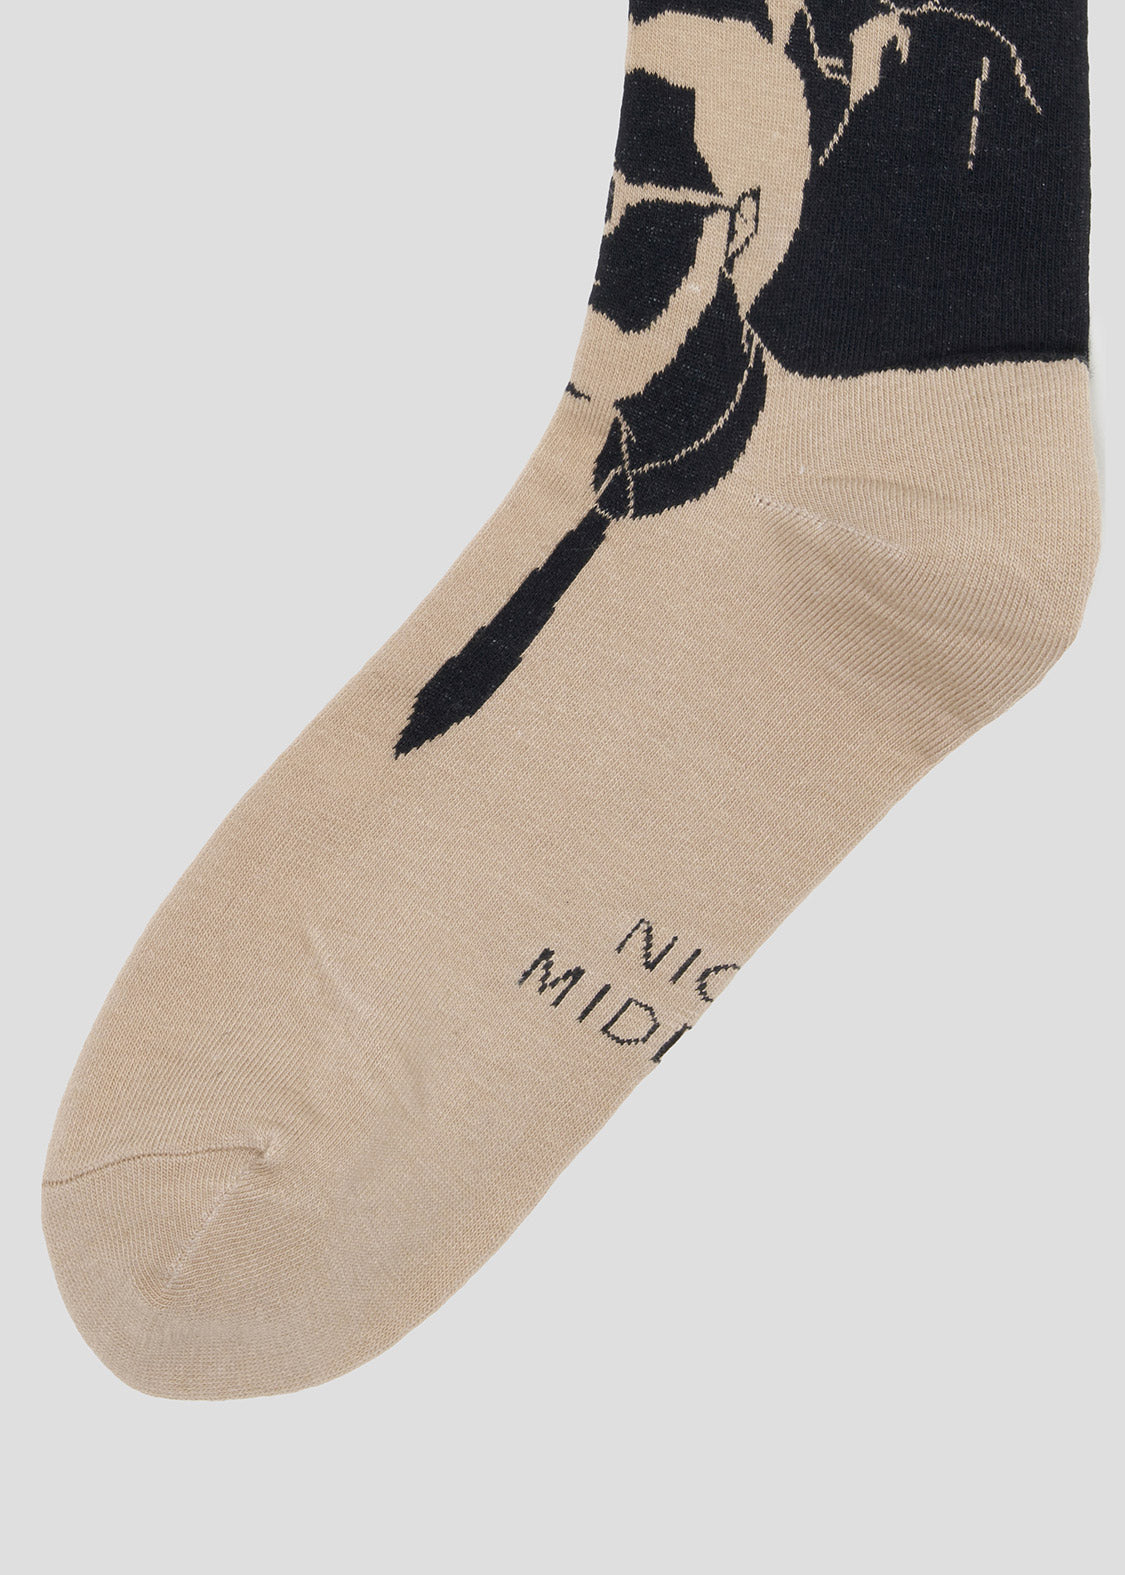 Middle Socks (Nice Middle-aged Men)